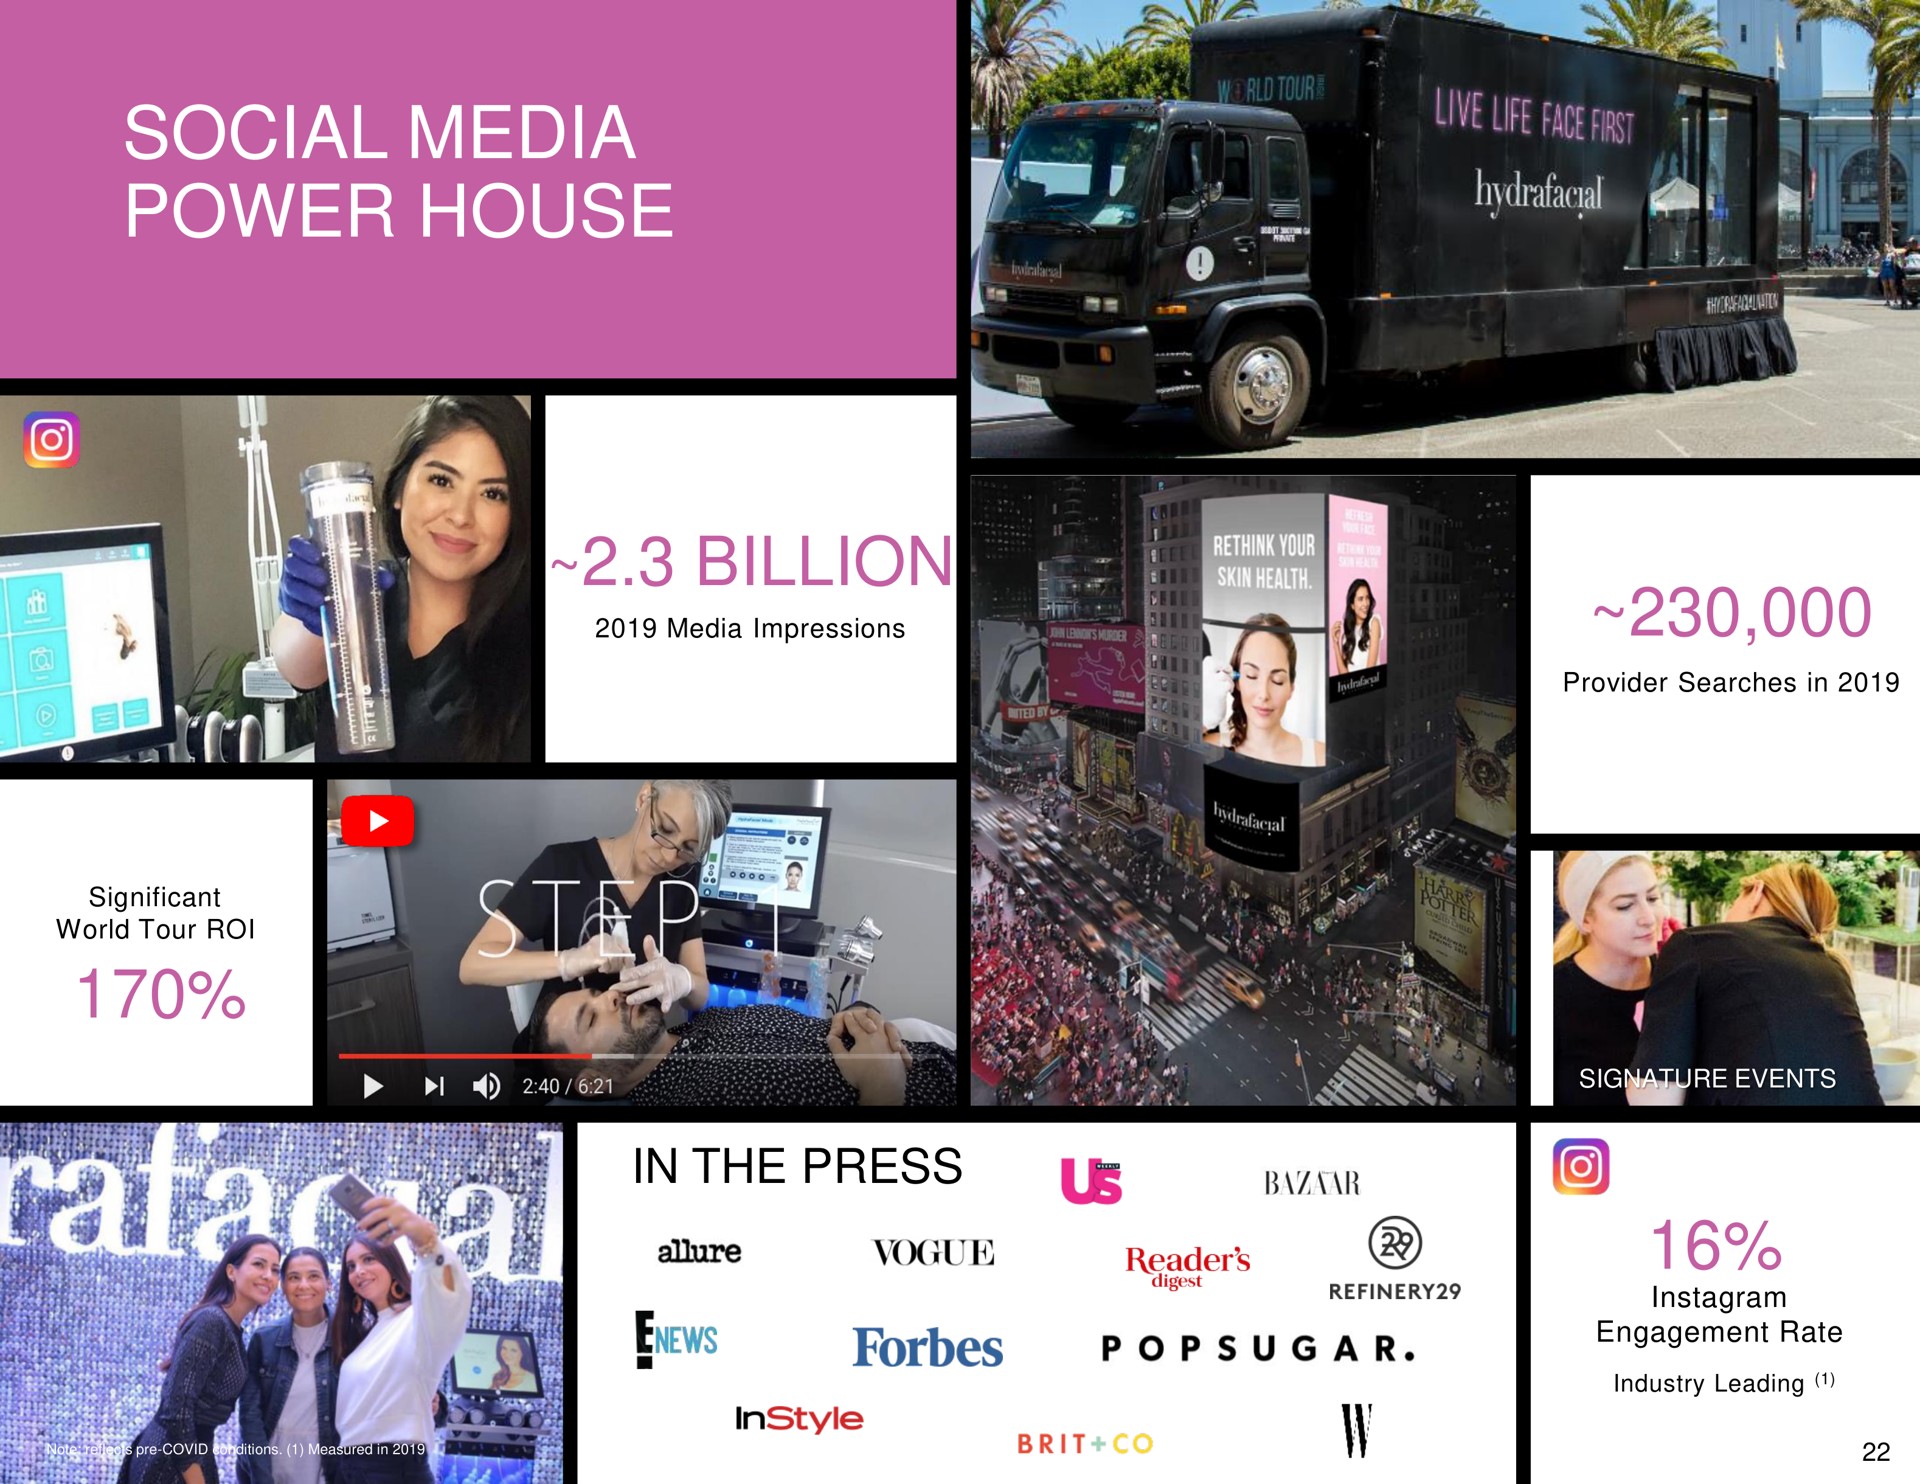 social media power house billion | Hydrafacial